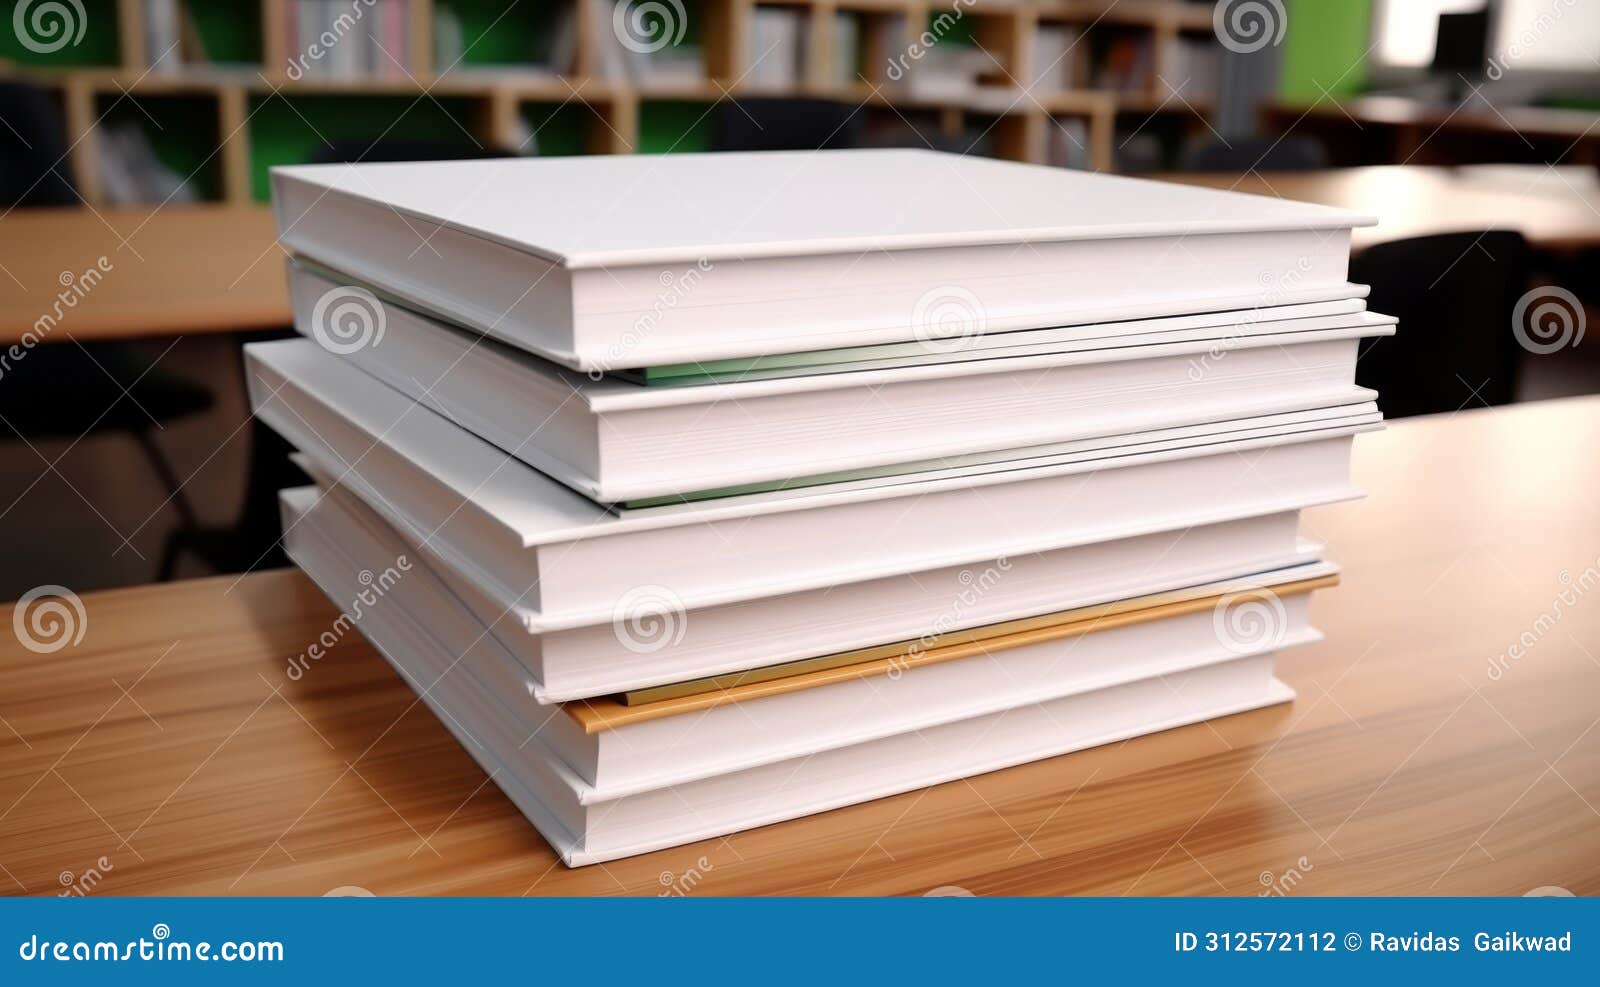 crisp blank textbooks, primed for learning